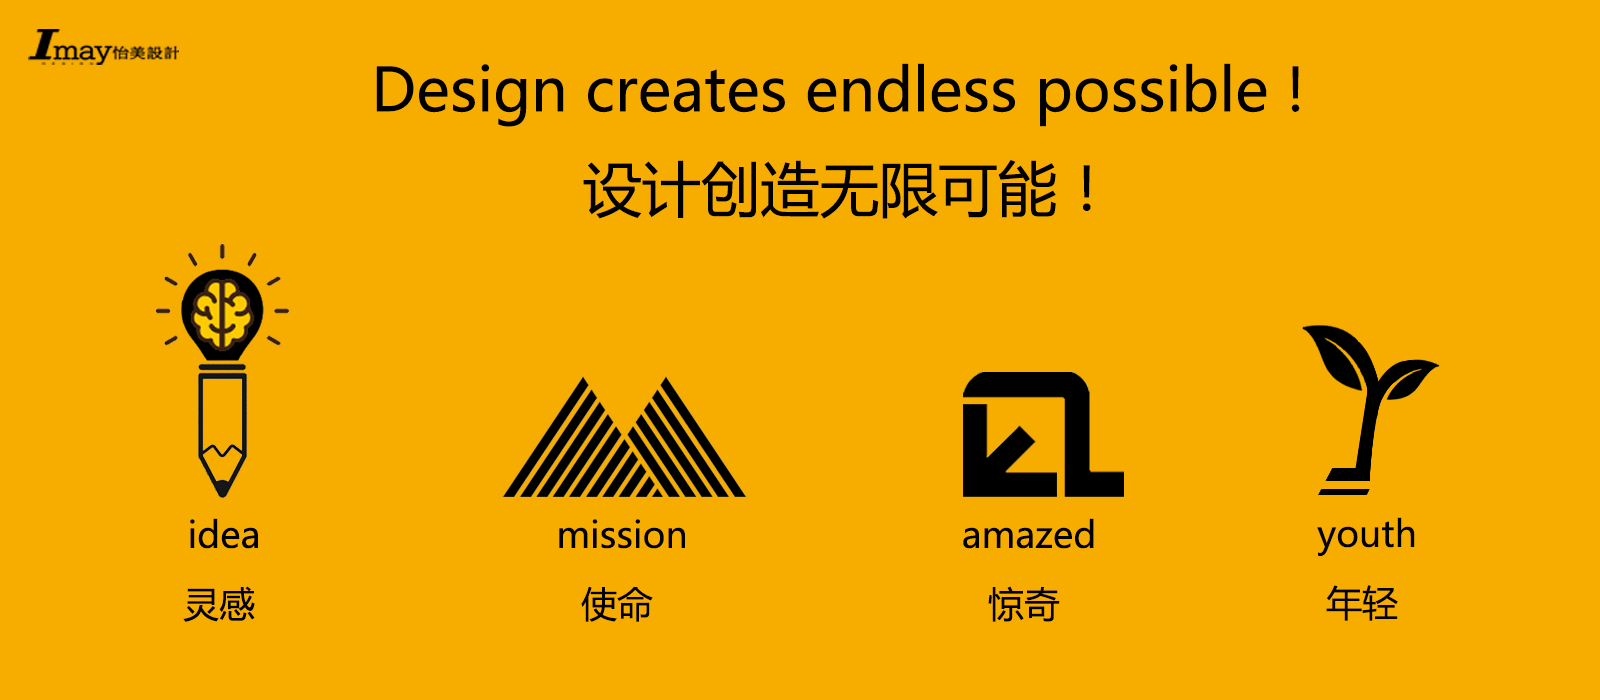 深圳外观设计产品设计结构设计公司;怡美工业设计